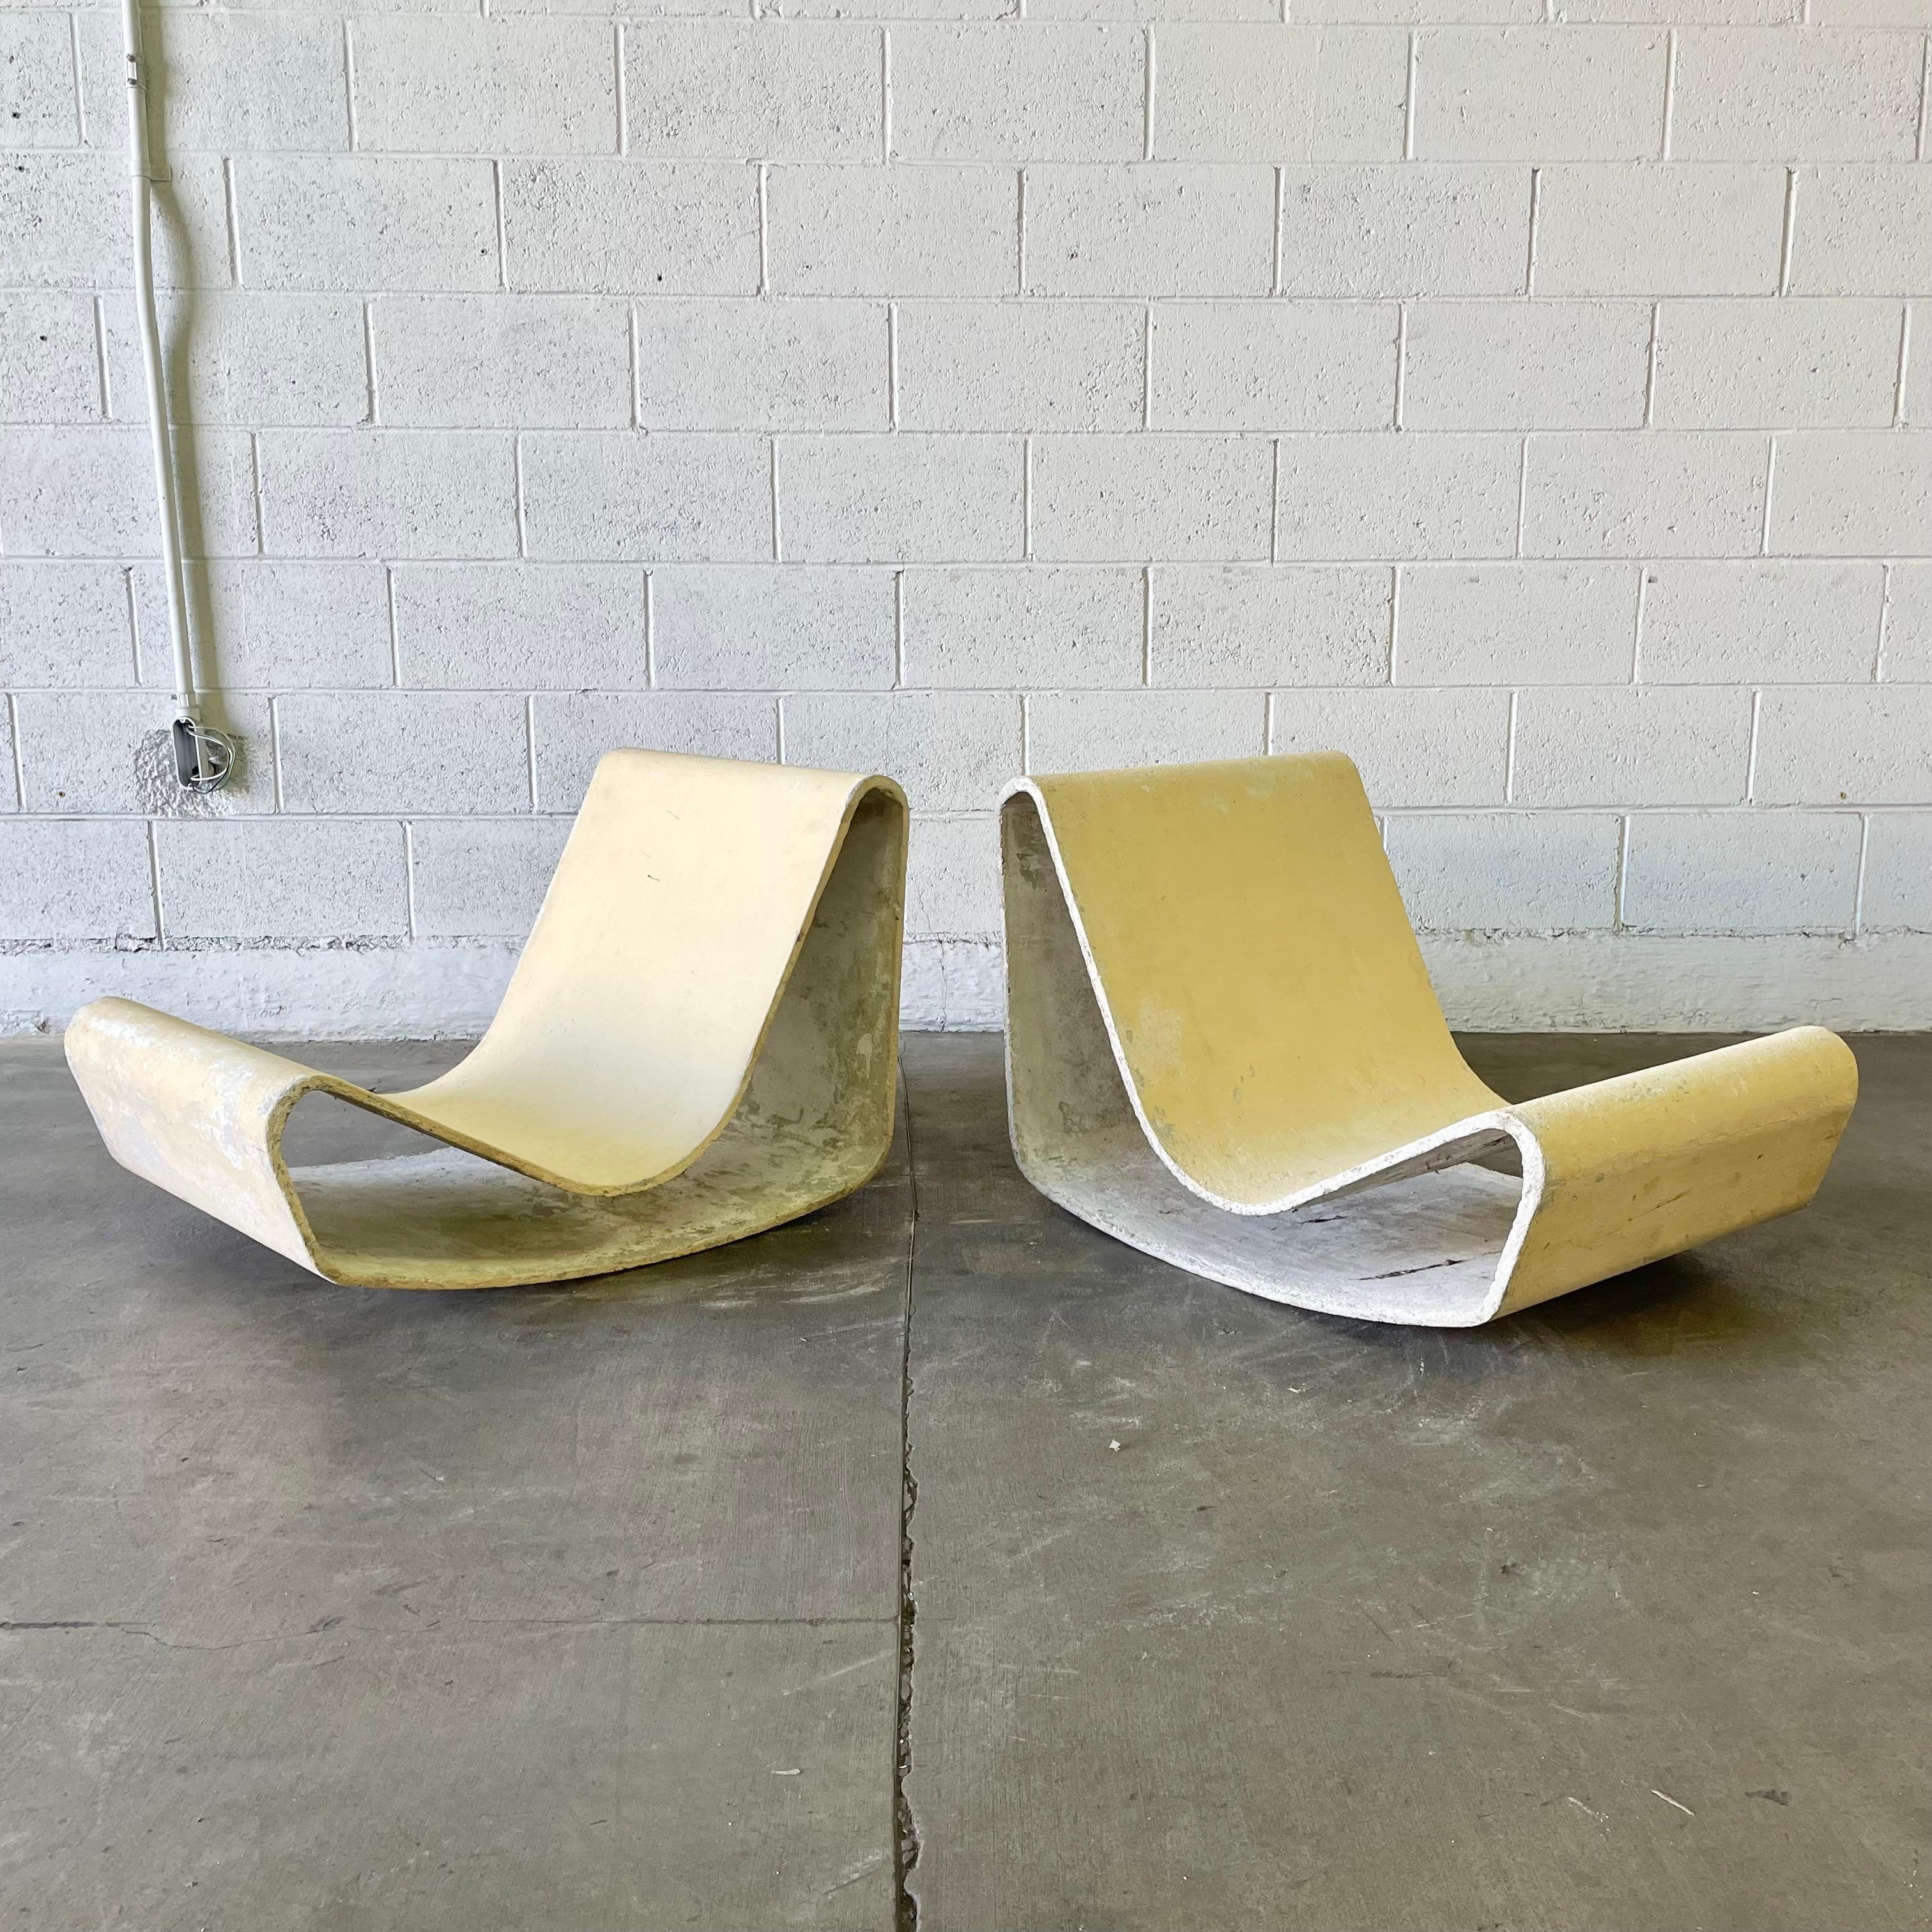 Ein ikonisches Paar Beton-Looping-Stühle von Willy Guhl.

Dieses Stuhlpaar wurde 1954 von Willy Guhl entworfen, nachdem Guhl beobachtet hatte, wie die Eternit-Platten eine Maschine im Eternit-Werk in Niederurnen verließen. Die Loop-Stühle mit